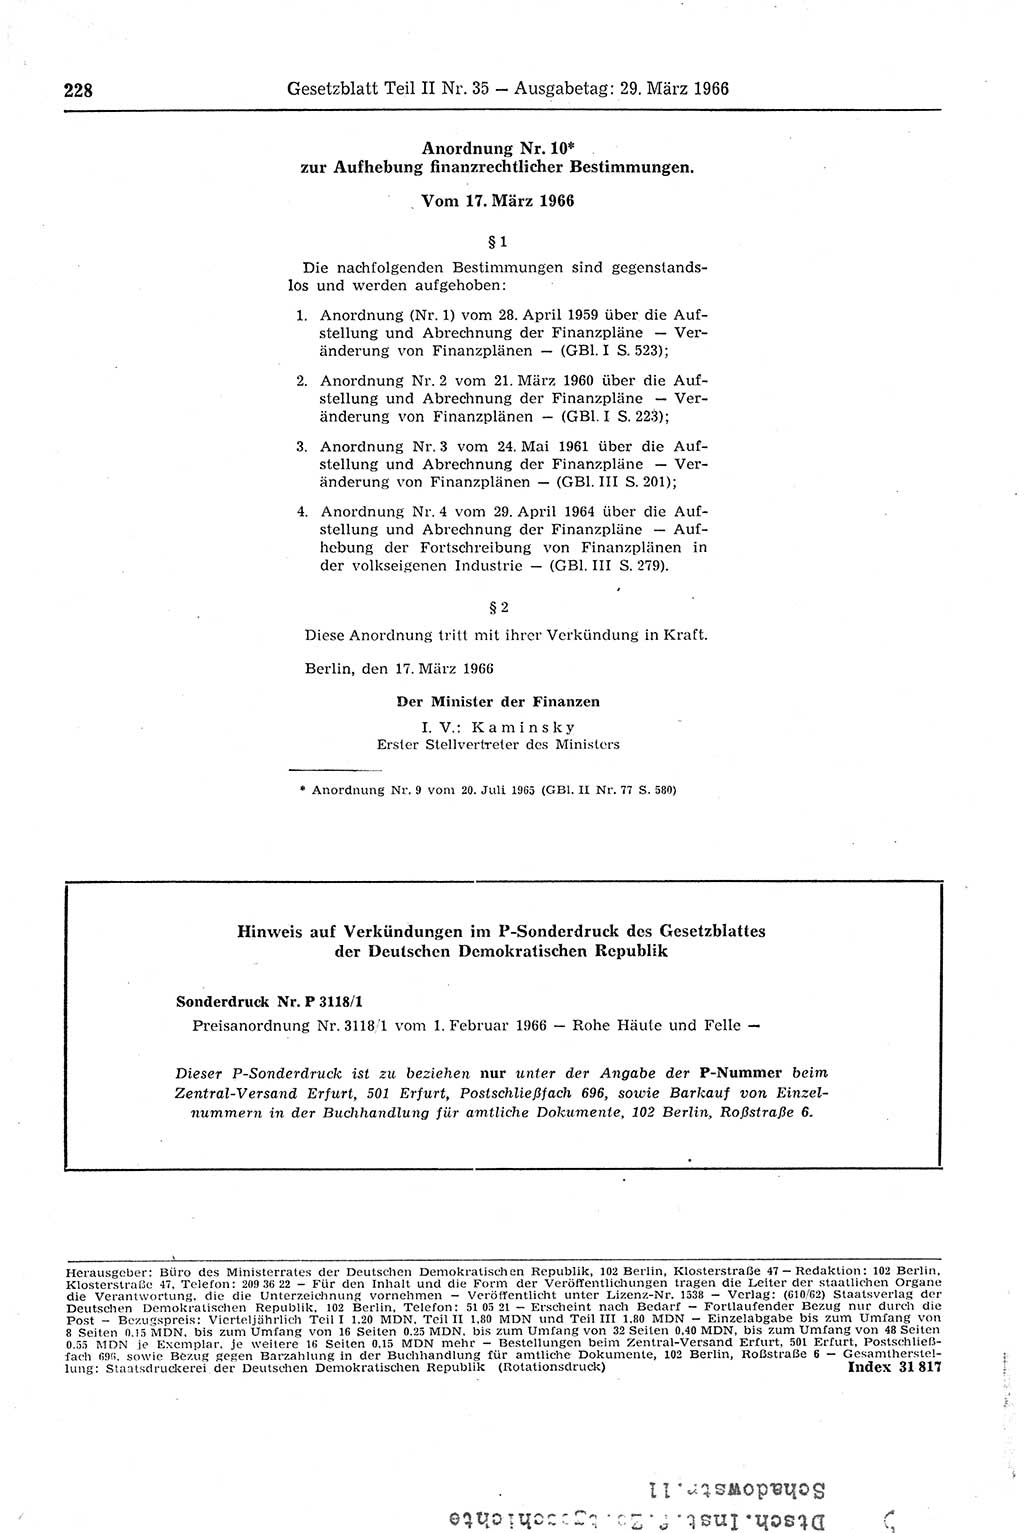 Gesetzblatt (GBl.) der Deutschen Demokratischen Republik (DDR) Teil ⅠⅠ 1966, Seite 228 (GBl. DDR ⅠⅠ 1966, S. 228)